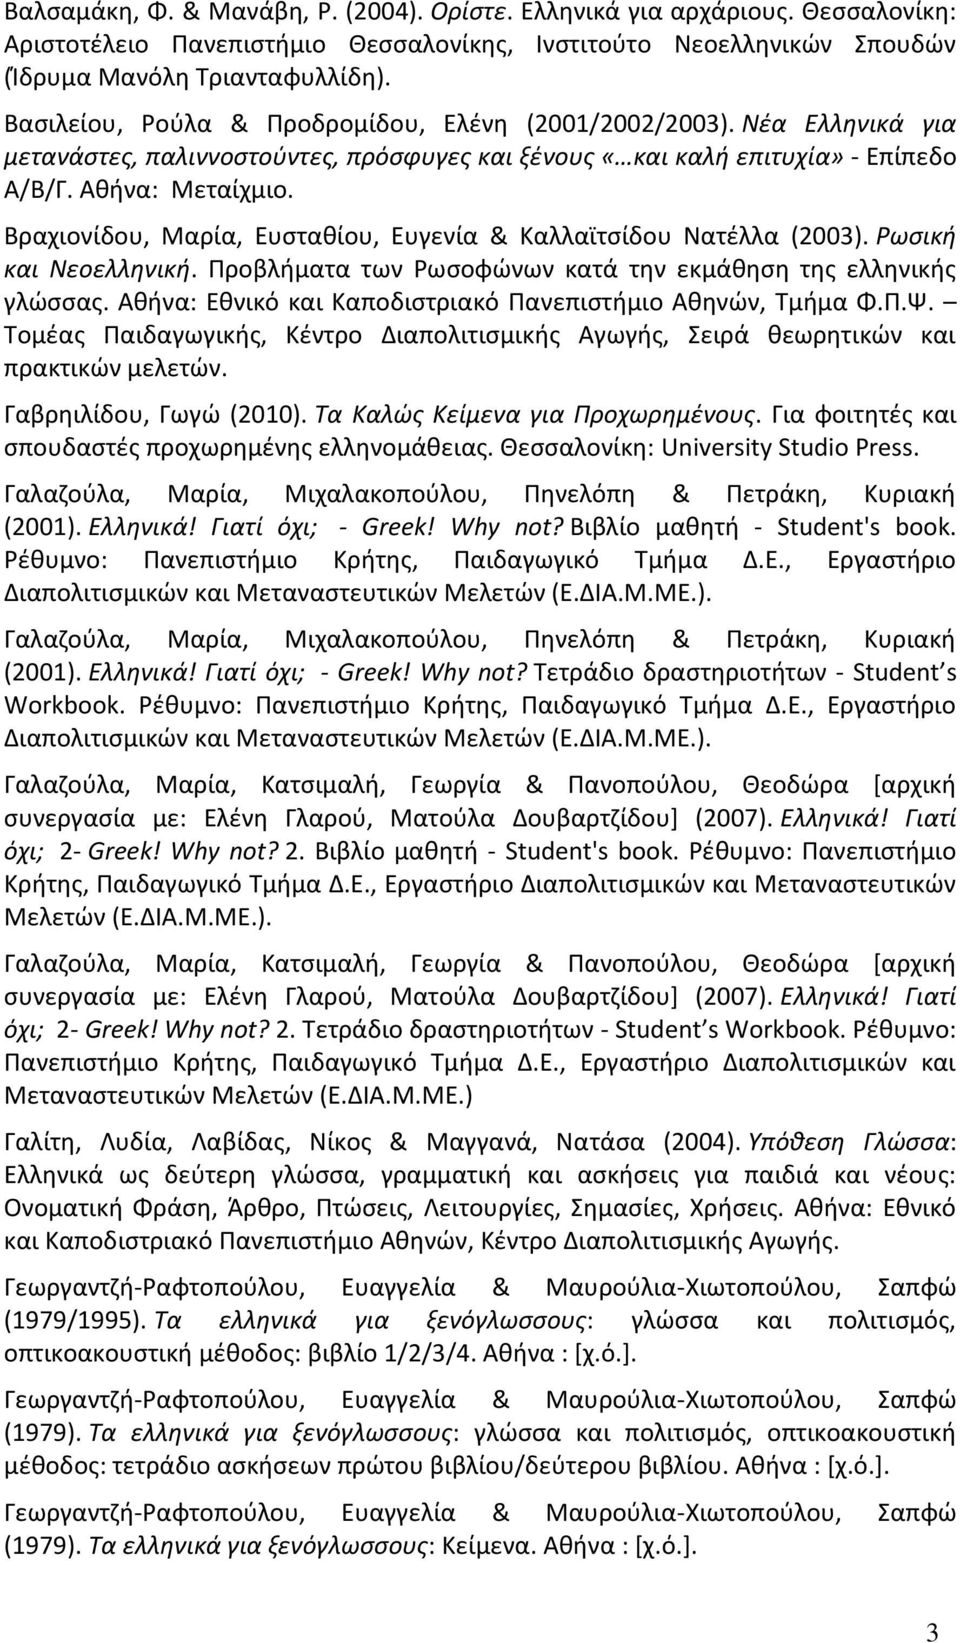 Βραχιονίδου, Μαρία, Ευσταθίου, Ευγενία & Καλλαϊτσίδου Νατέλλα (2003). Ρωσική και Νεοελληνική. Προβλήματα των Ρωσοφώνων κατά την εκμάθηση της ελληνικής γλώσσας.